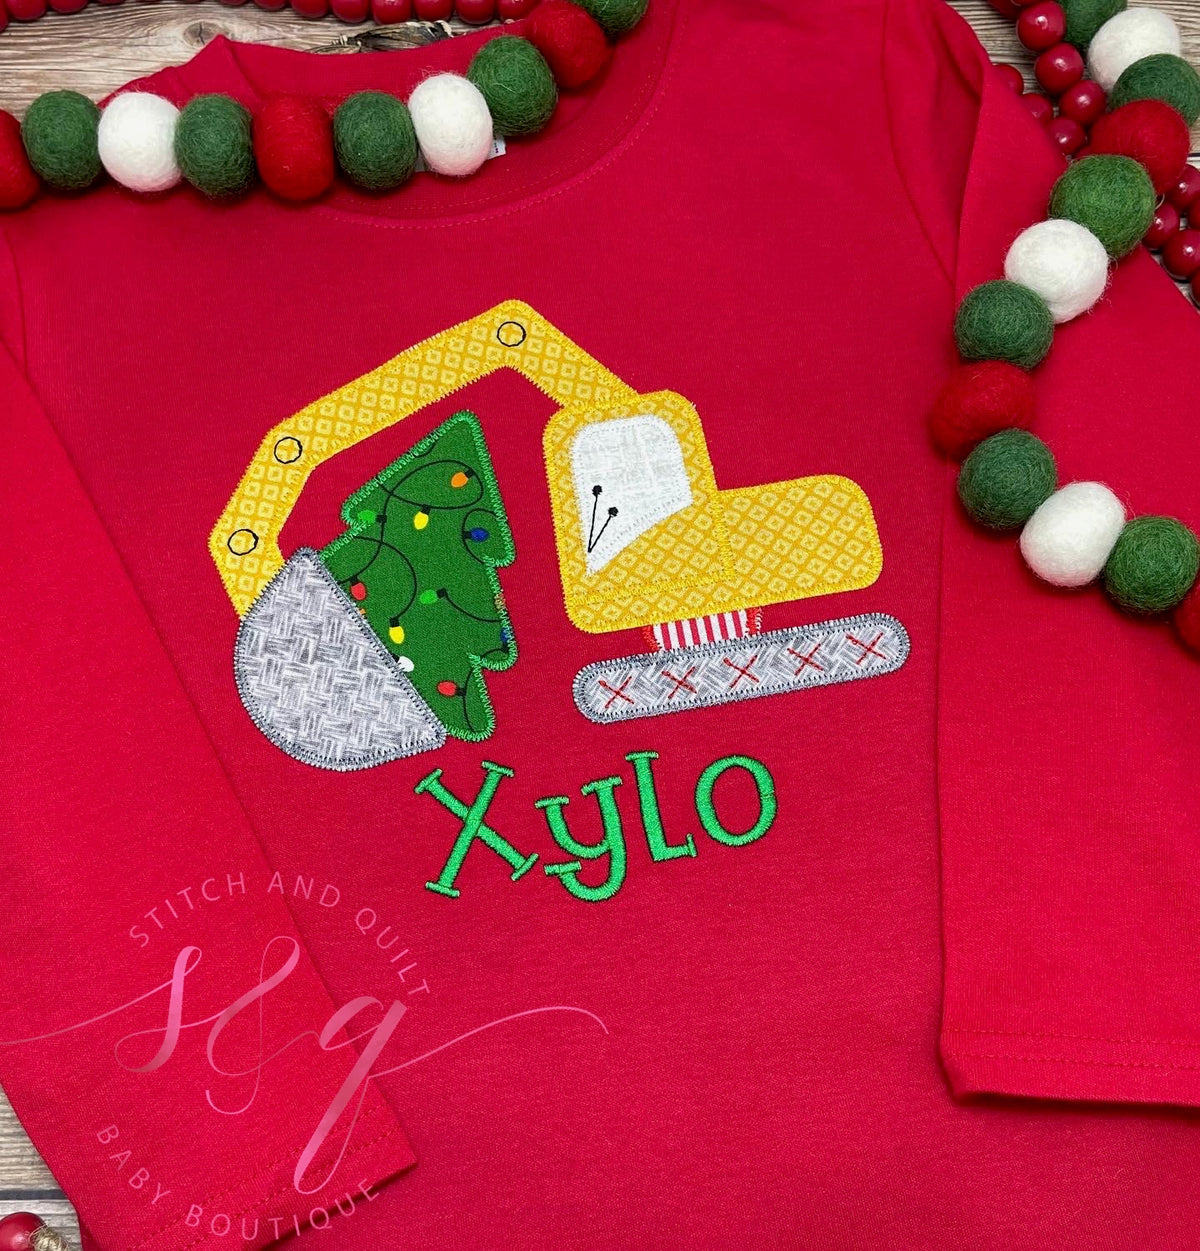 Boys Toddler and Infant Christmas Shirt, Holiday shirt for boys, Christmas shirt for boys